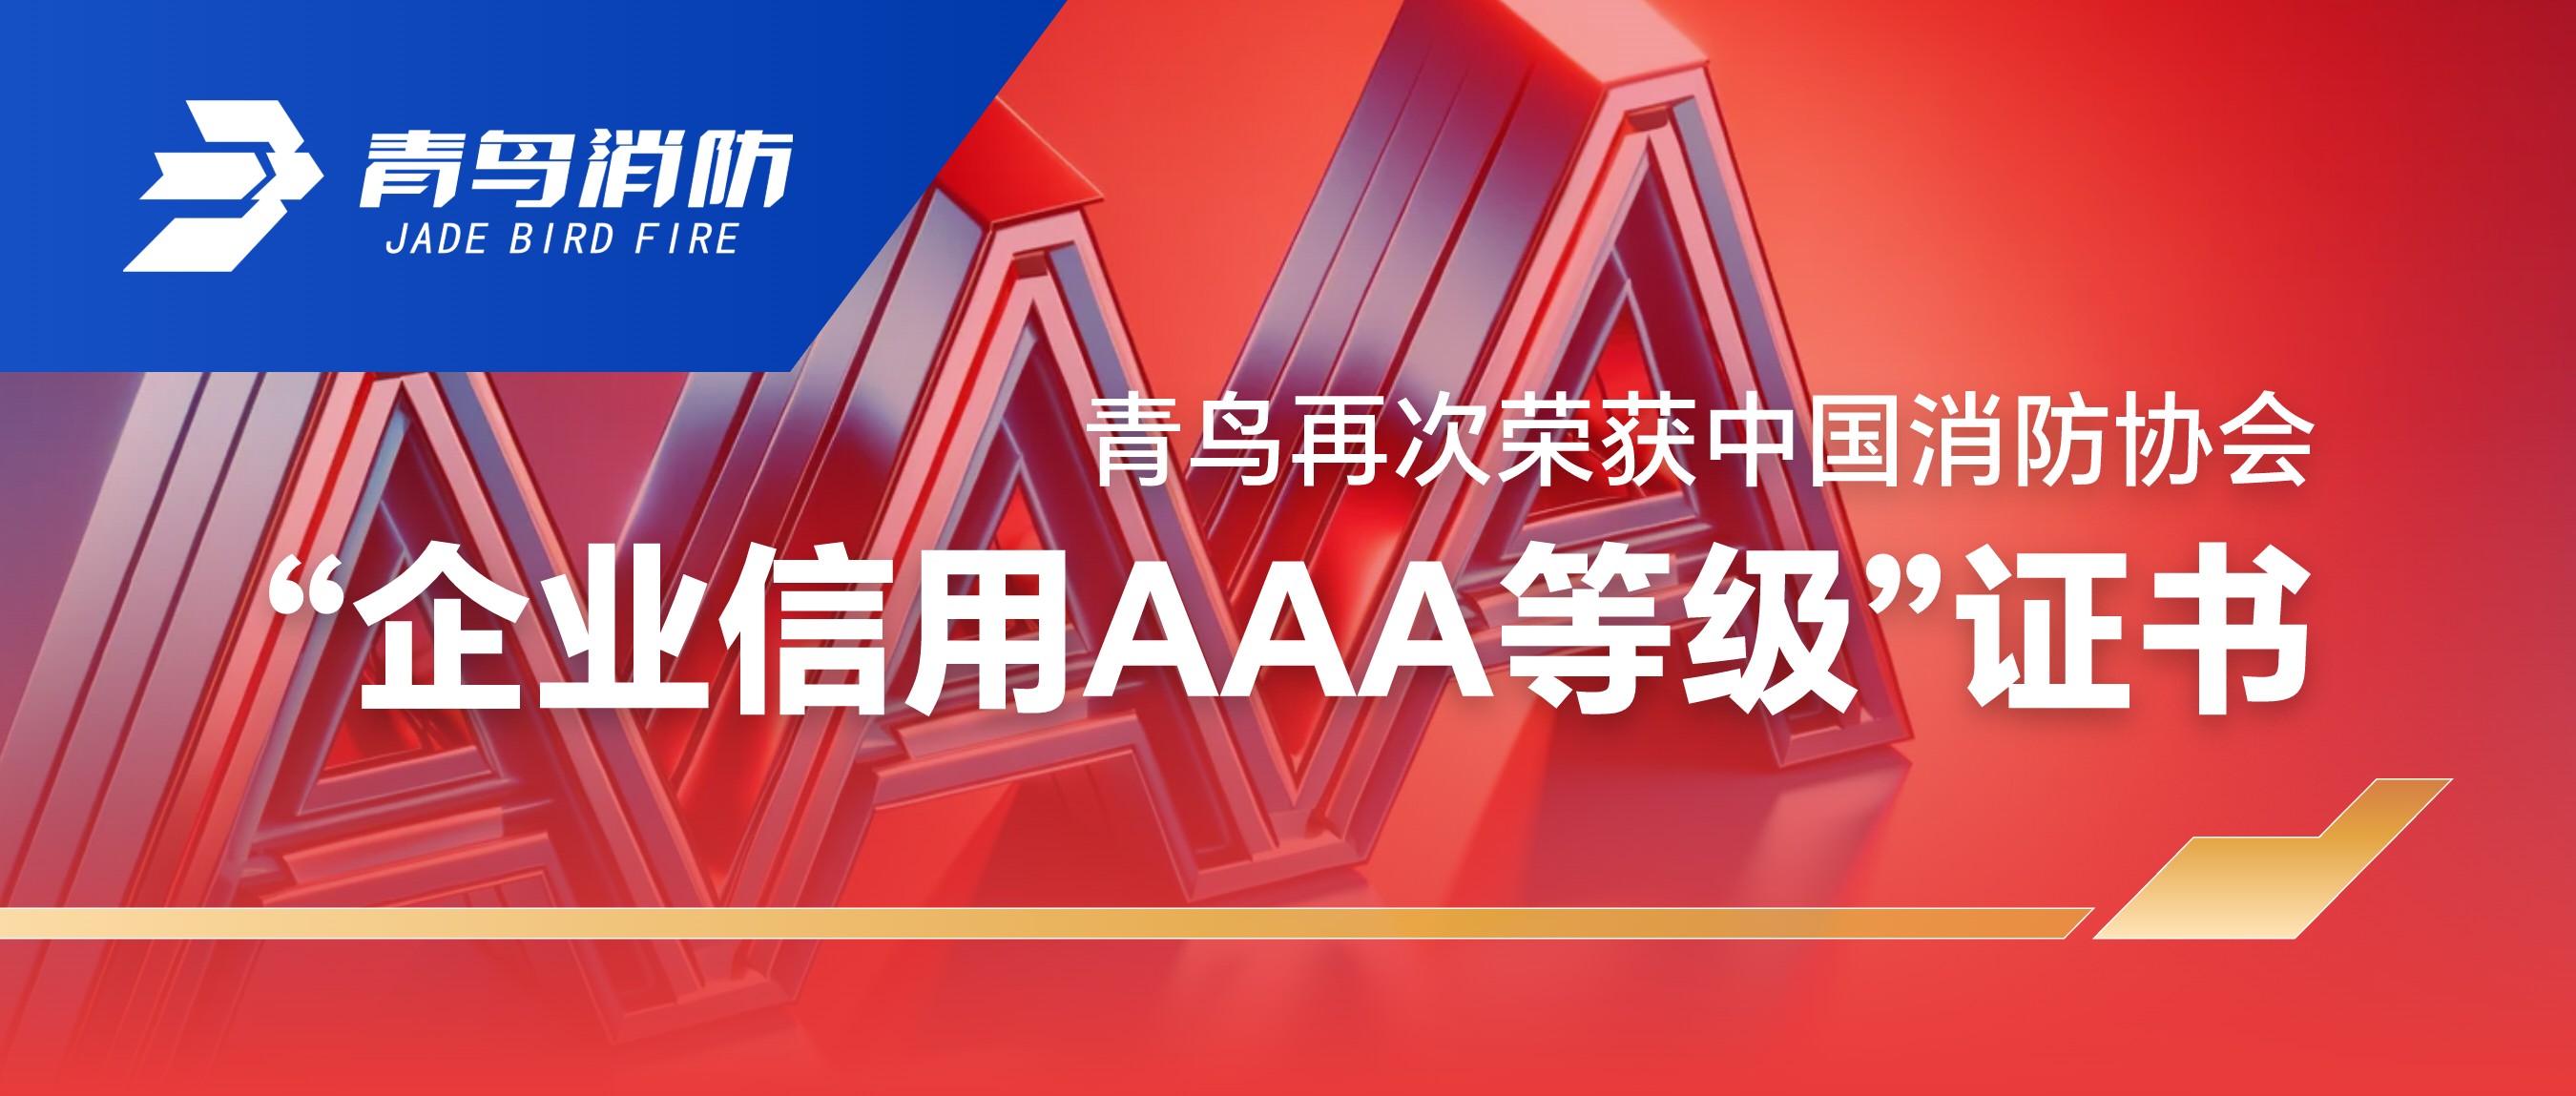 青鸟再次荣获中国消防协会“企业信用AAA等级”证书